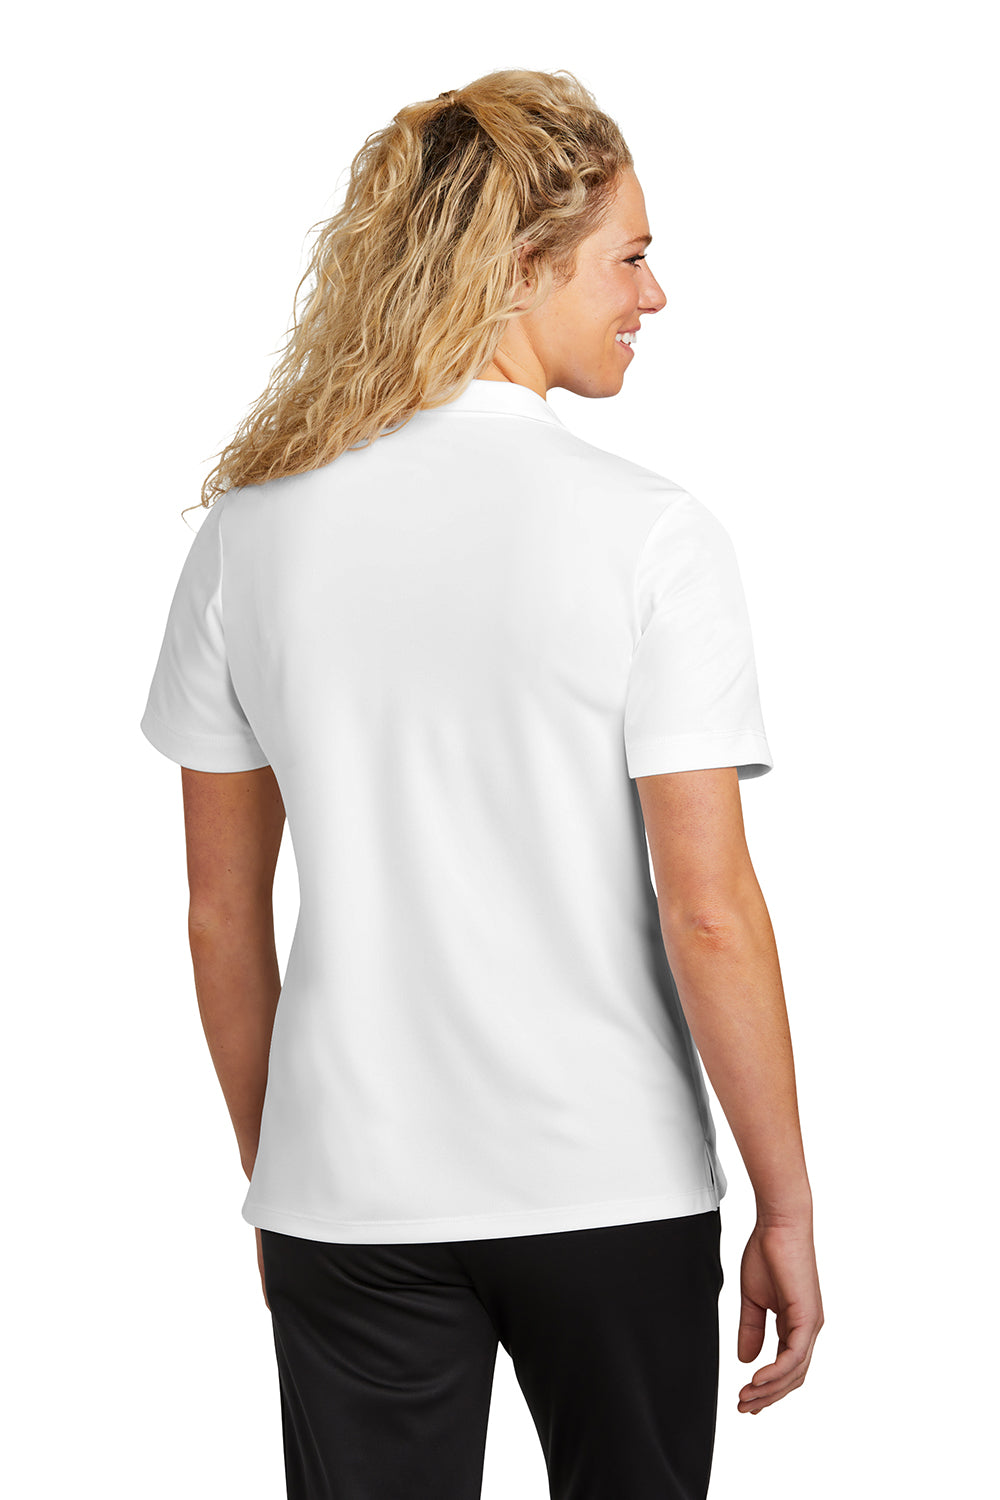 Sport-Tek LST740 Womens UV Micropique Short Sleeve Polo Shirt White Back